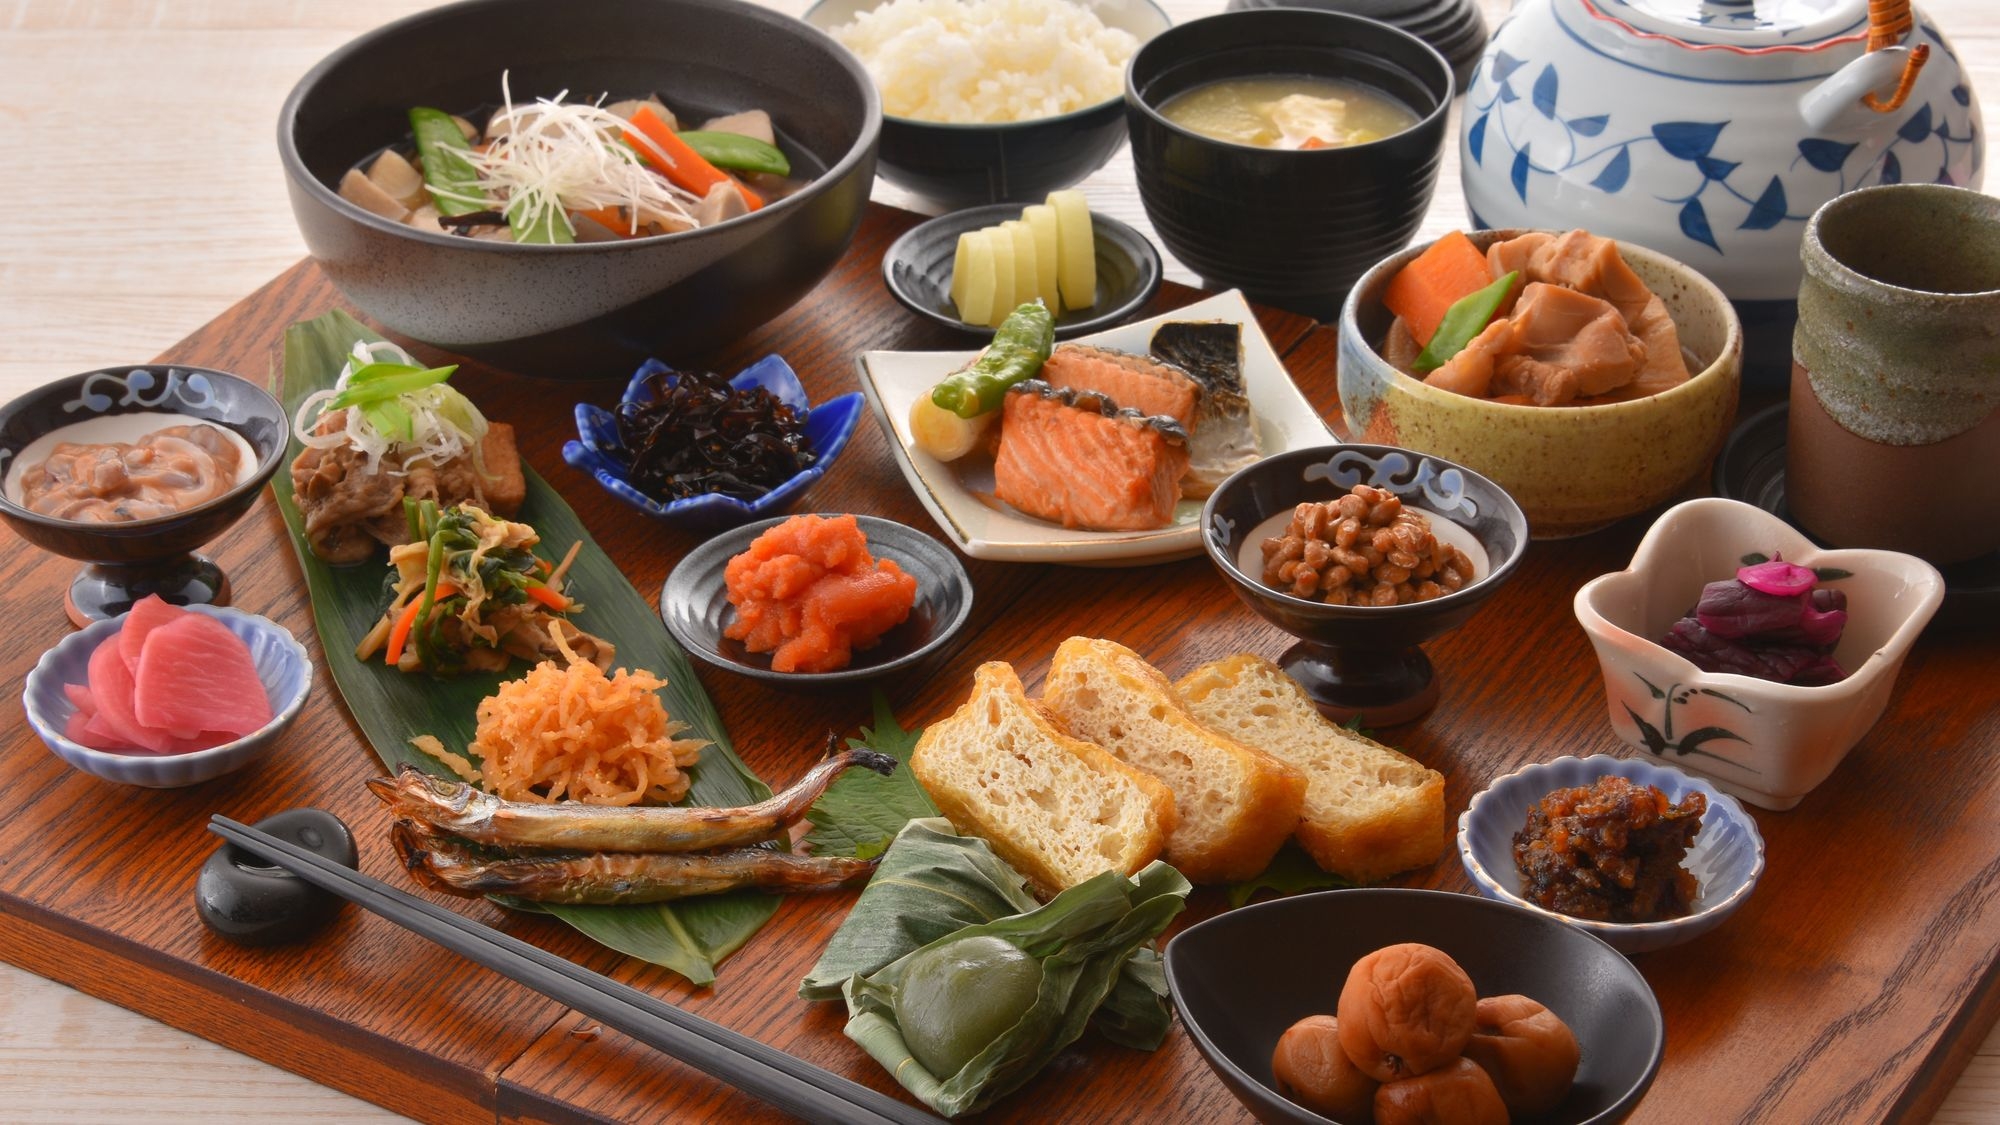 【スタンダード】■新潟駅直結■【朝食付き】お客様評価点4.5以上の朝食を是非ご賞味ください